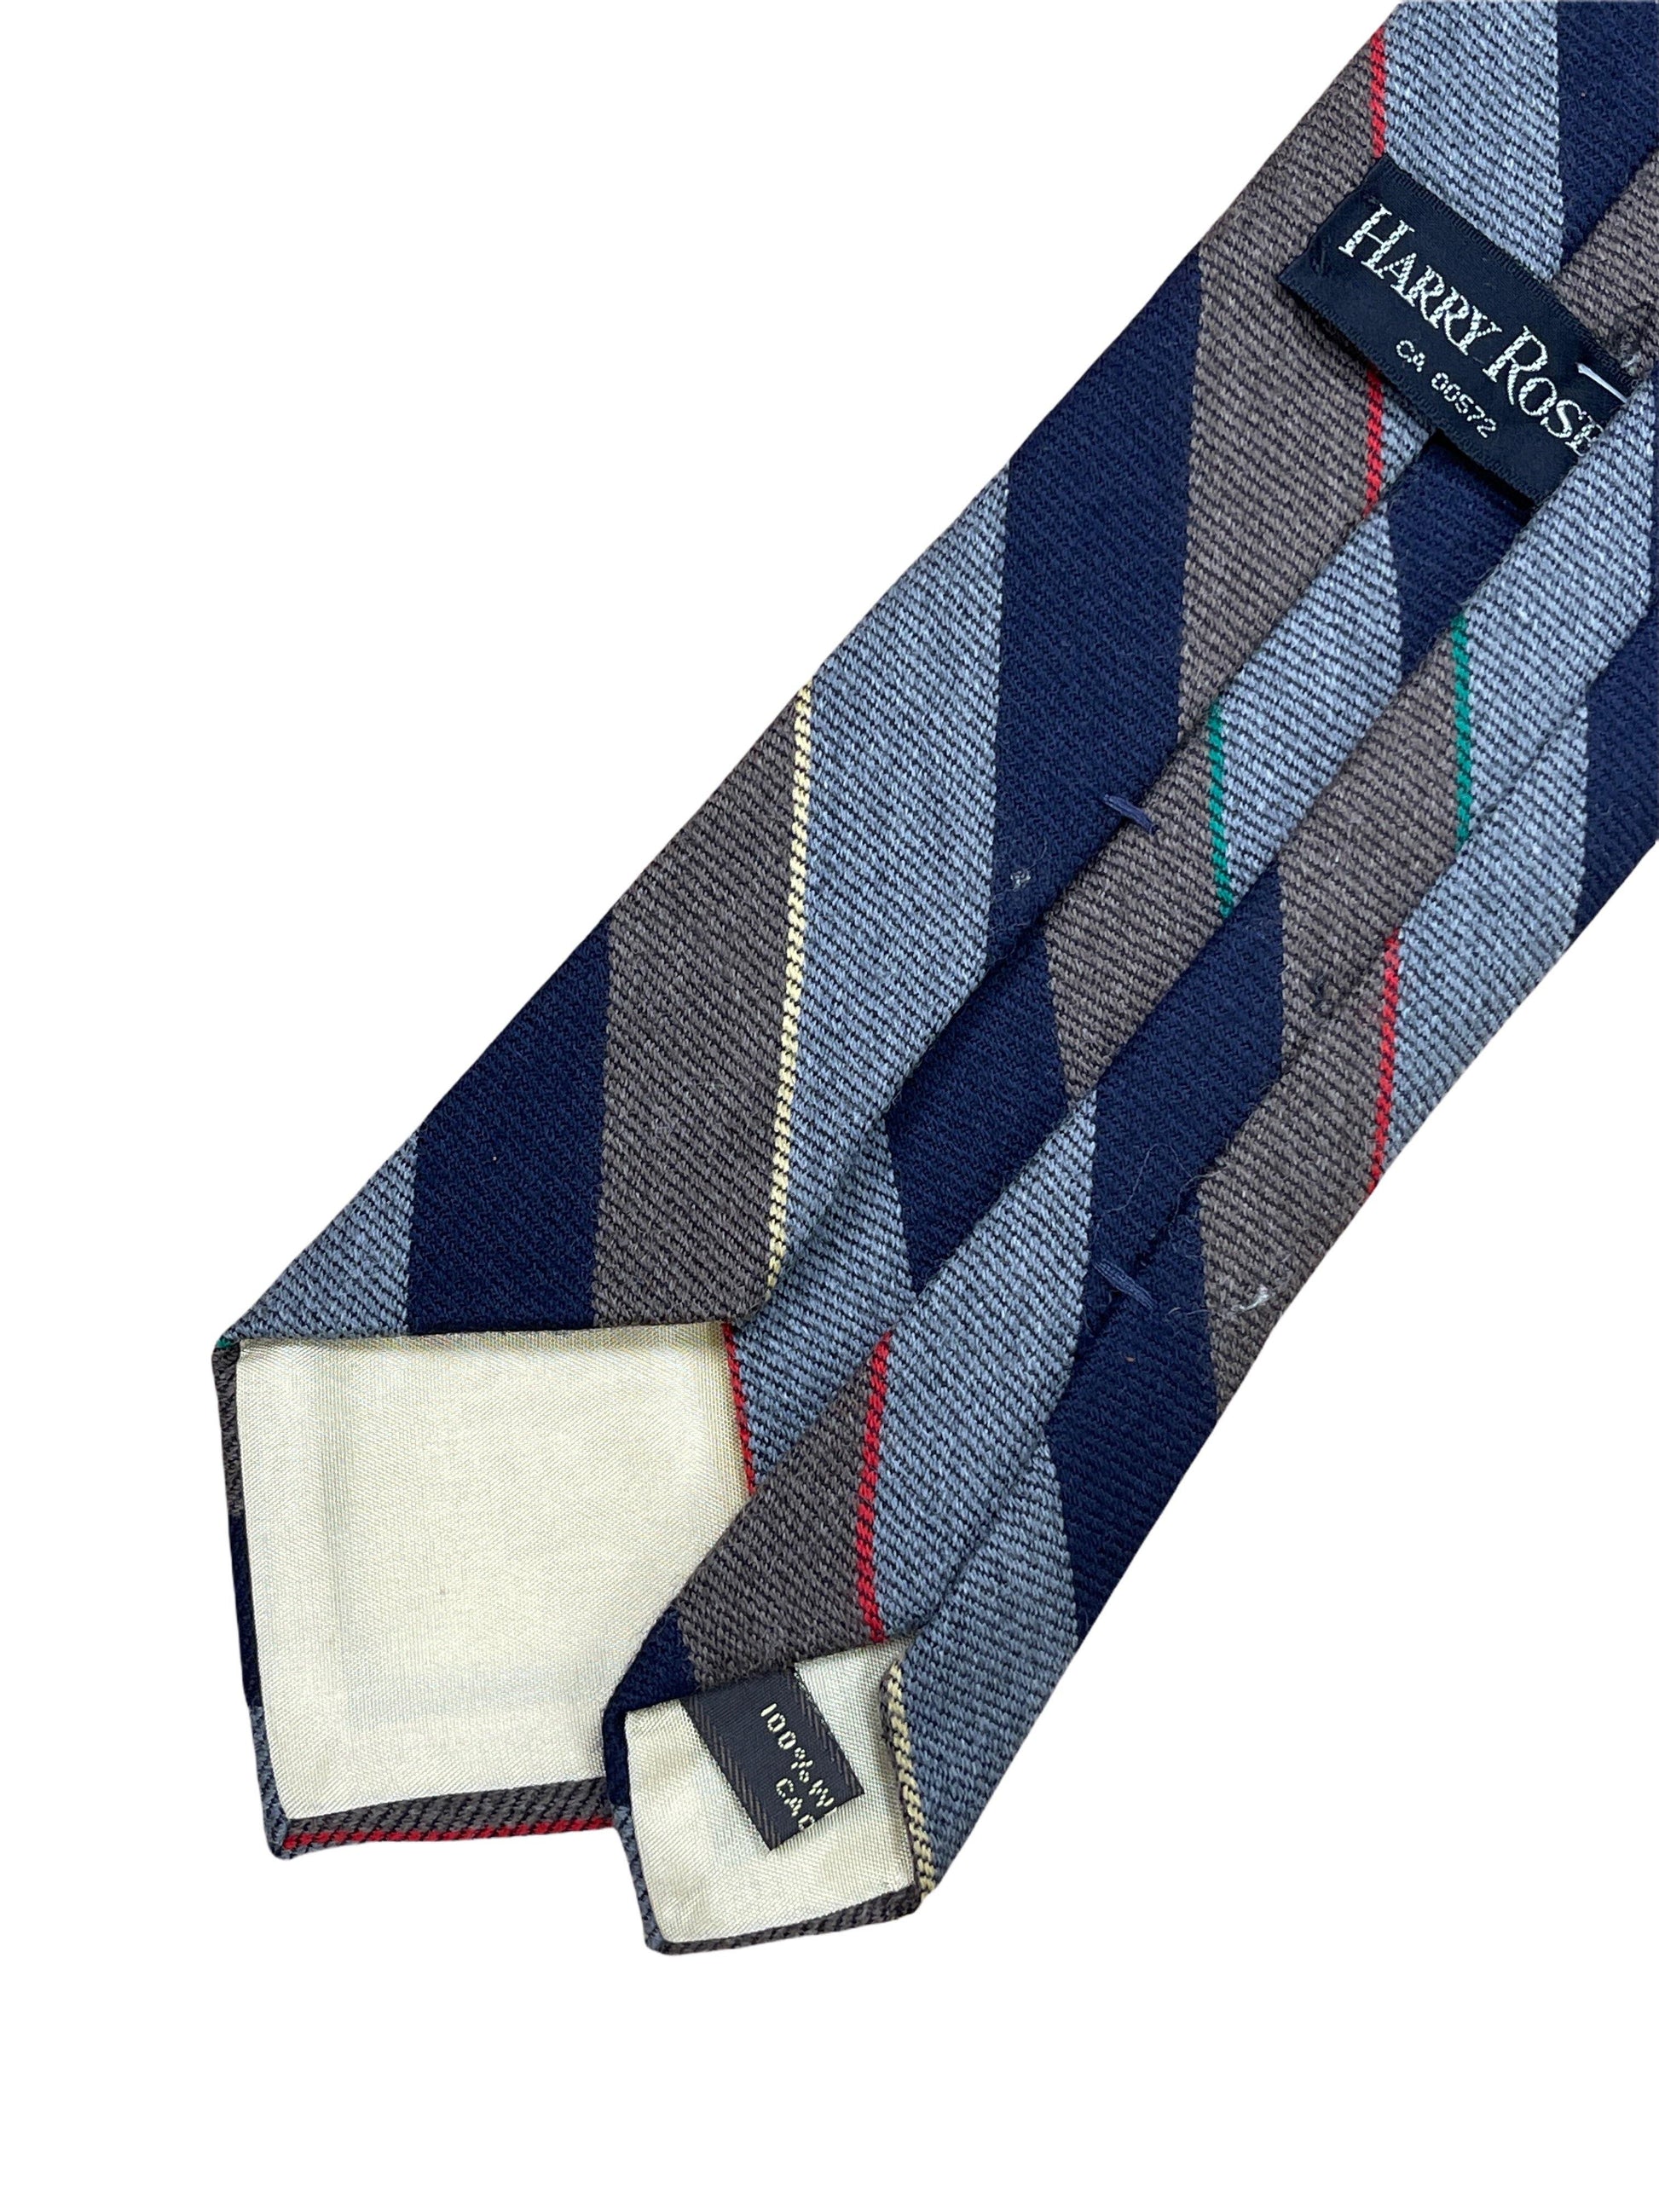 Harry Rosen navy, grey, brown striped wool tie. Genuine Design luxury consignment 